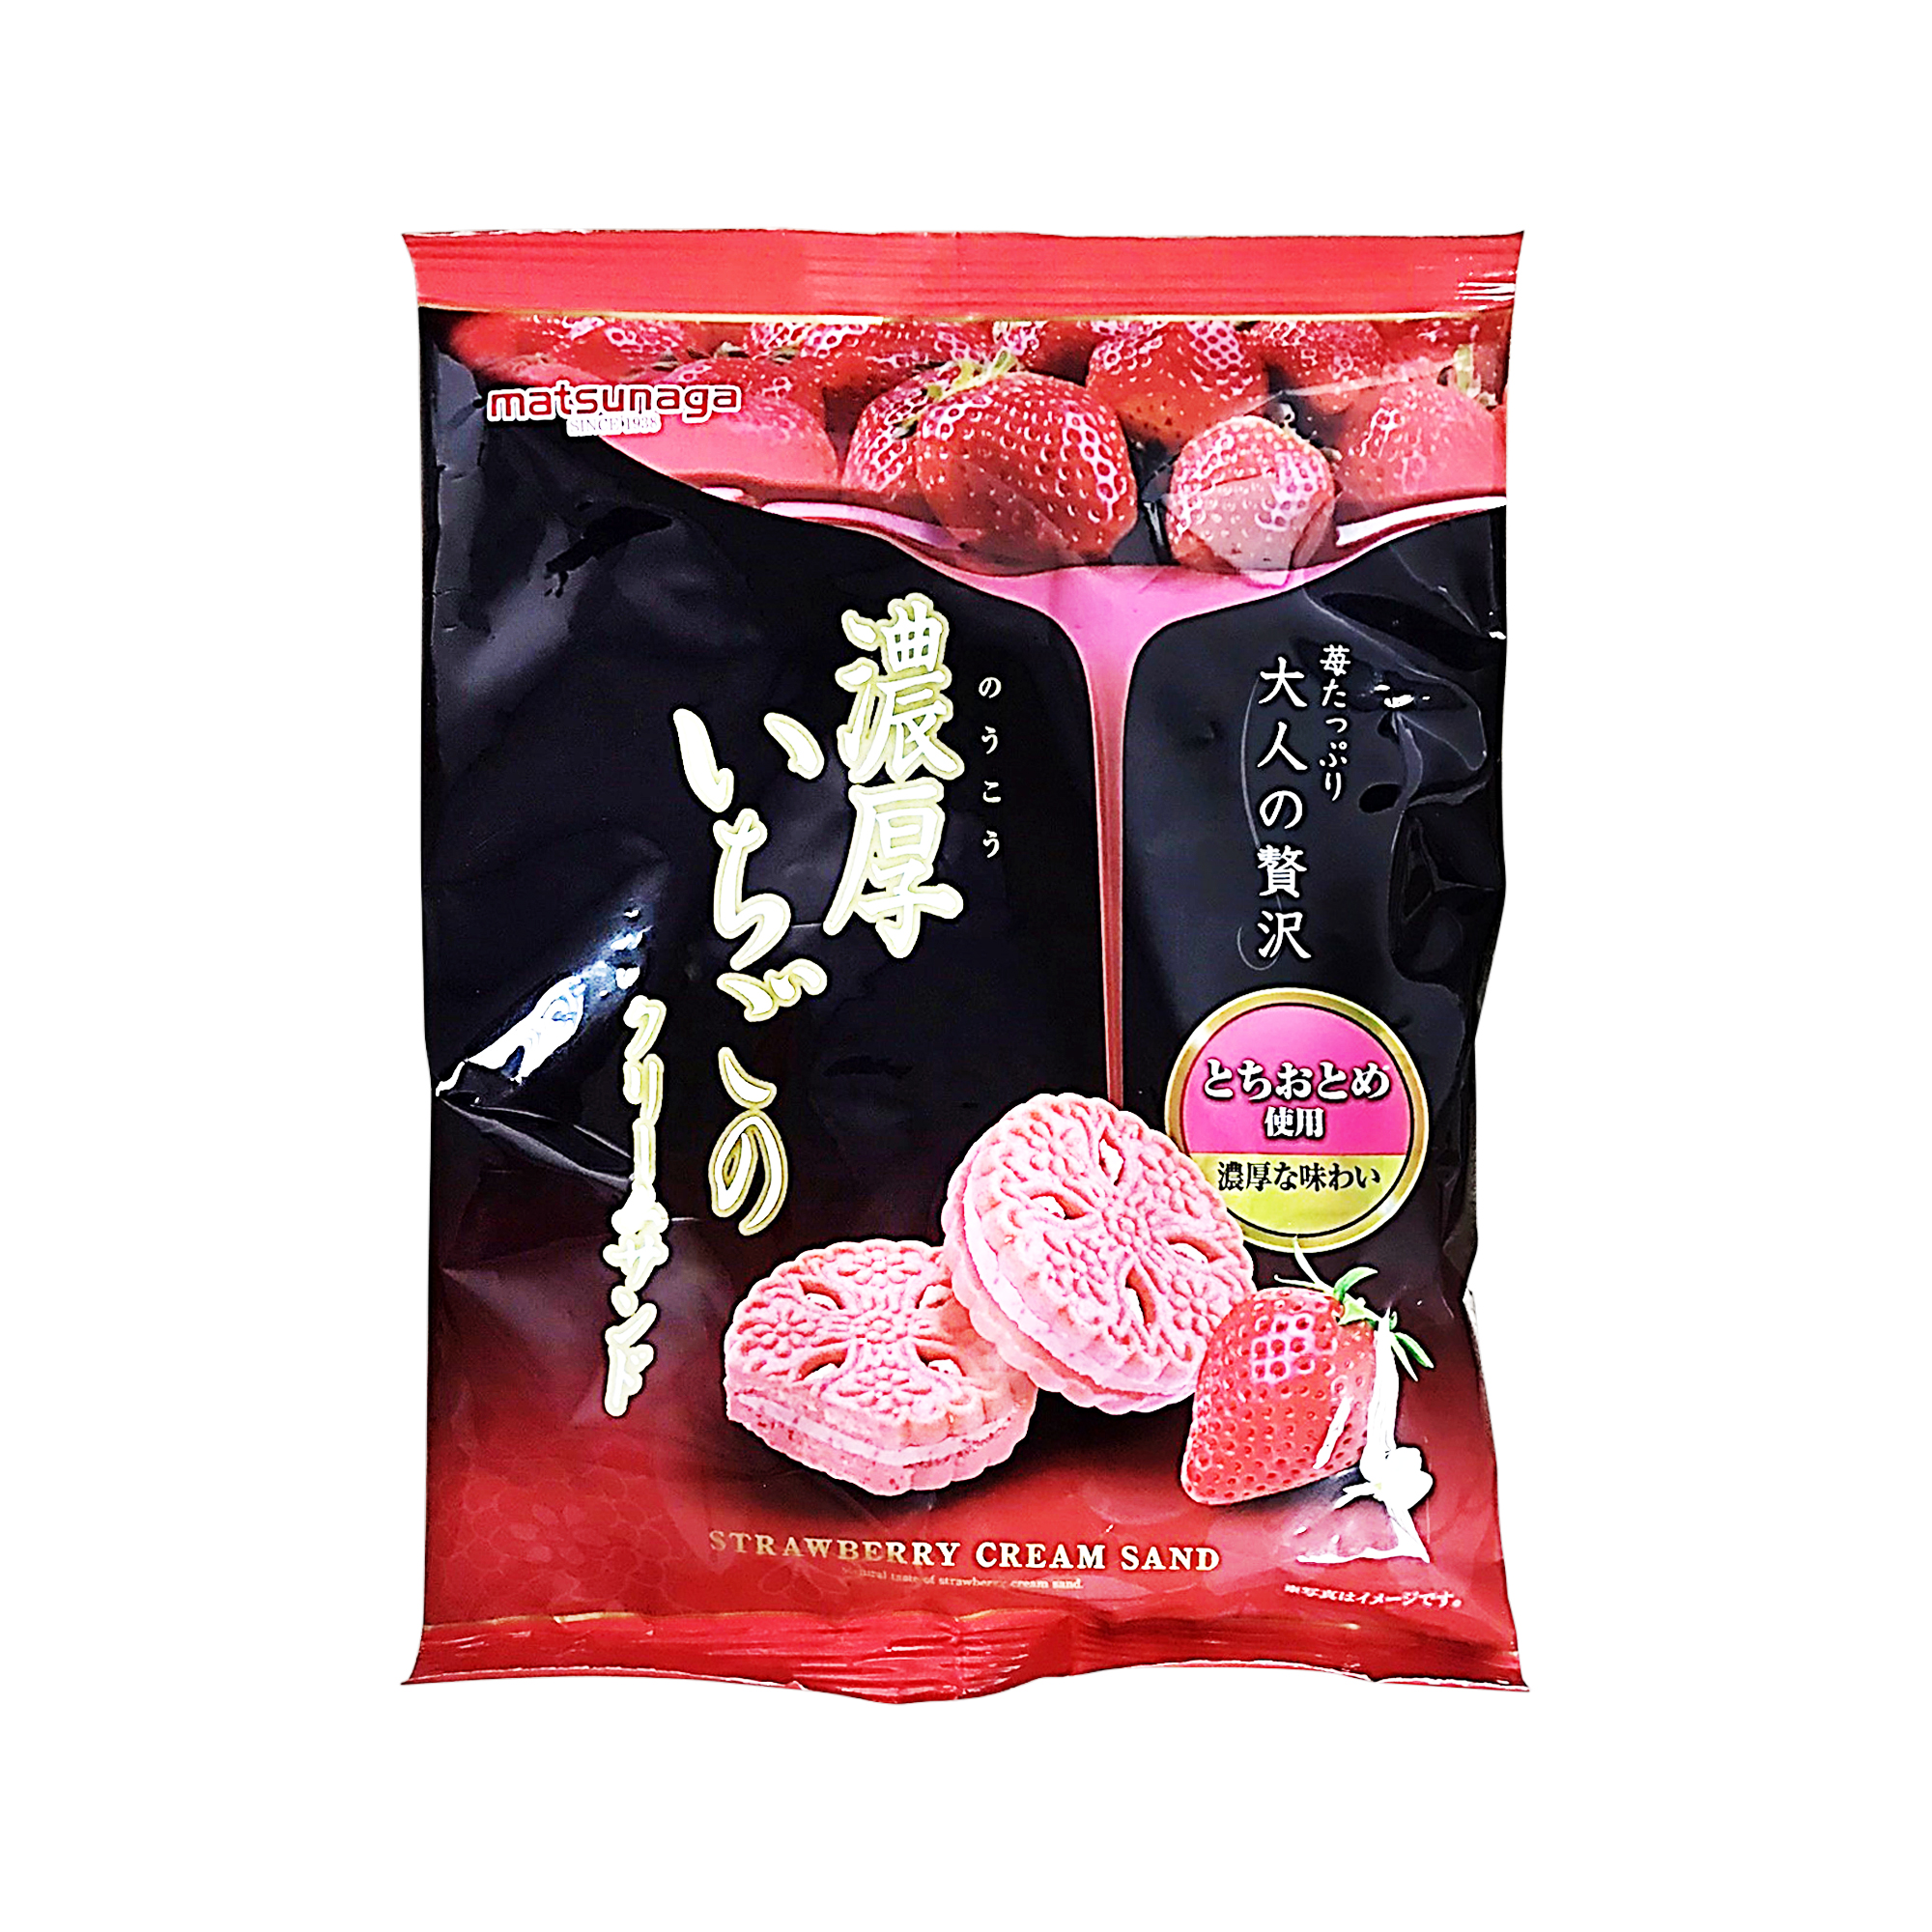 Matsunaga Strawberry Biscuit Cream Sand 90g